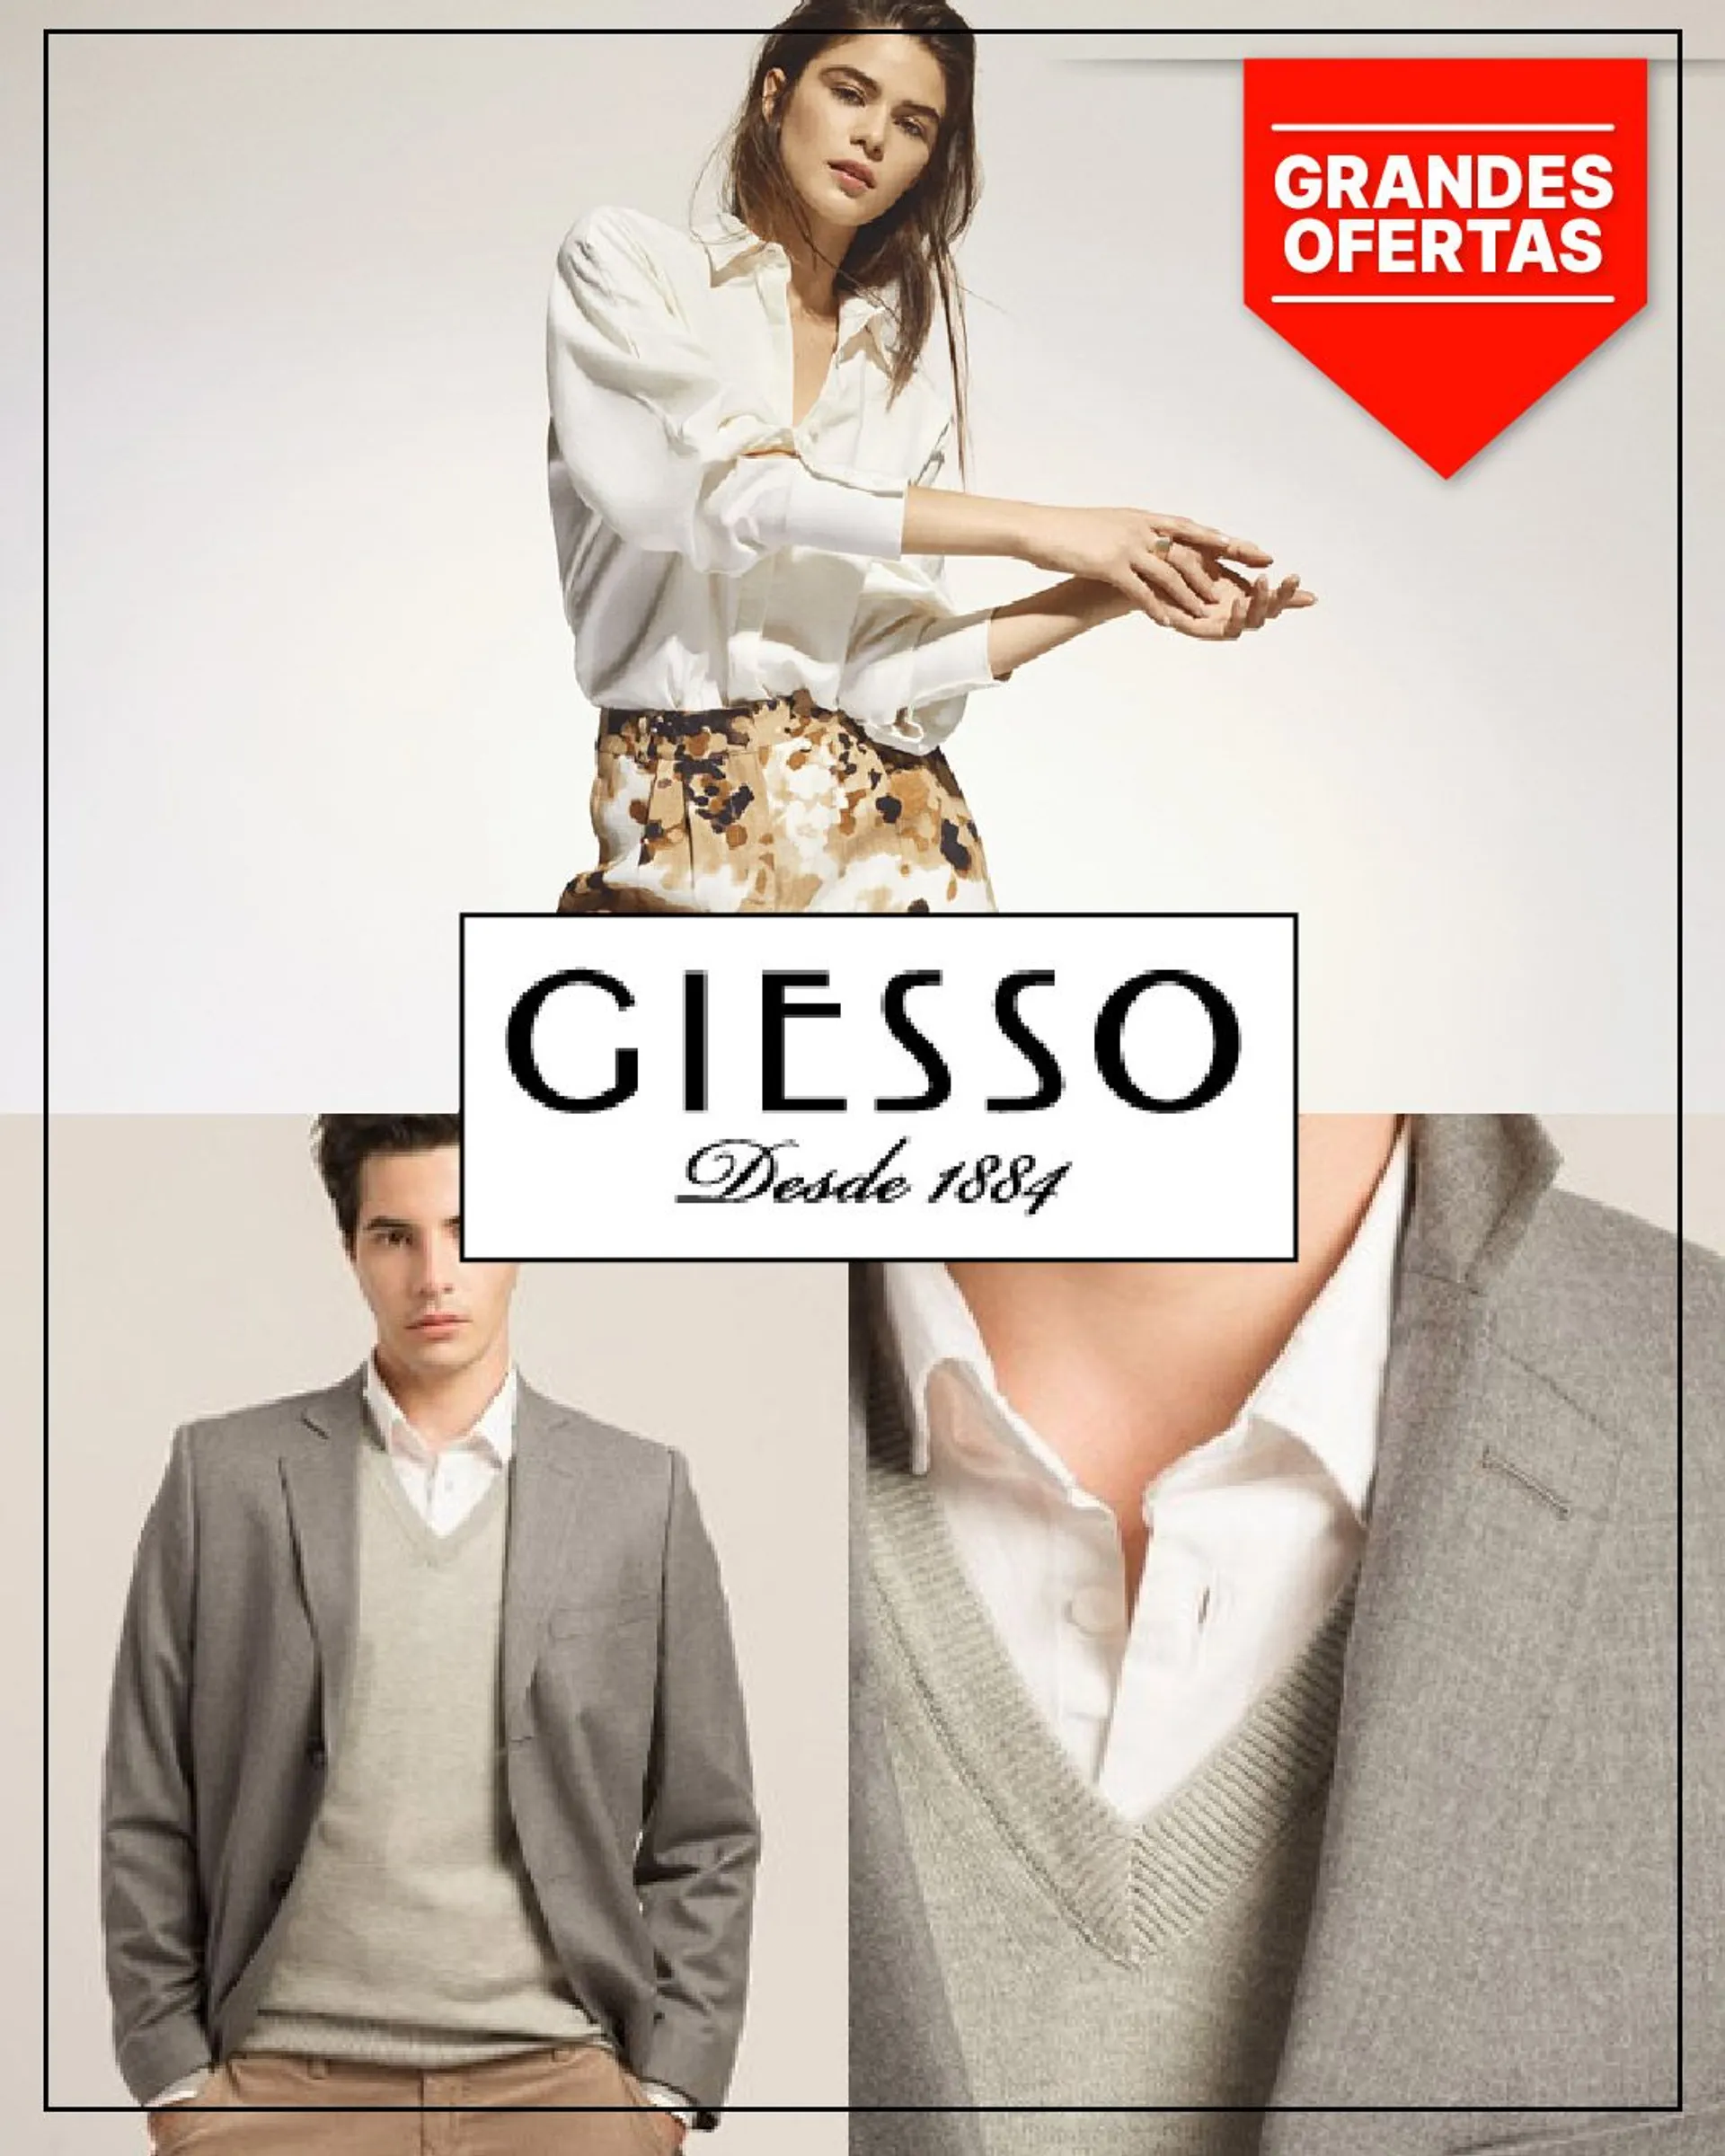 Ofertas de Giesso - Moda 28 de mayo al 2 de junio 2023 - Página 1 del catálogo